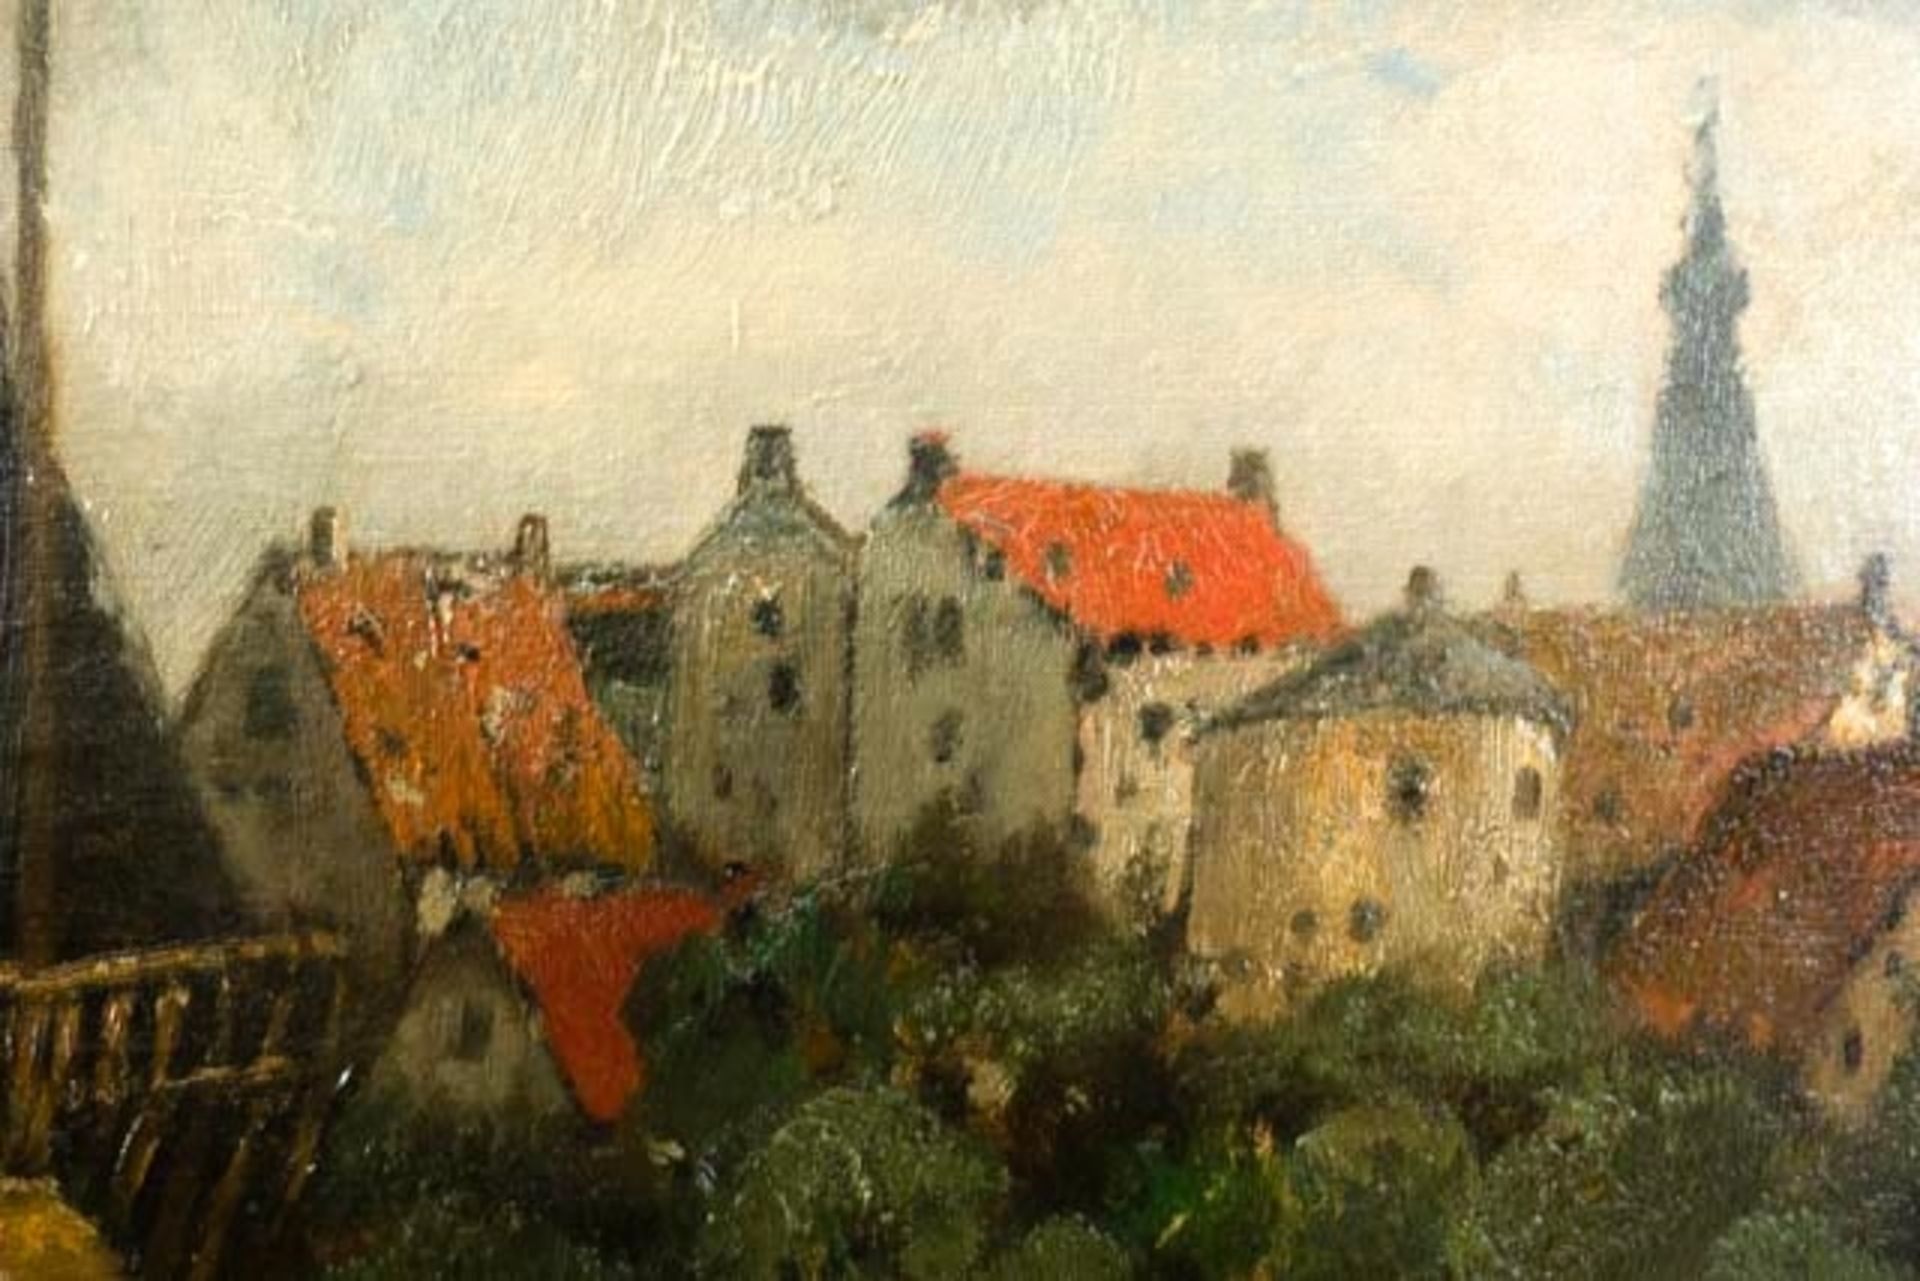 Gemälde "Mühle in Landschaft" - Bild 4 aus 7